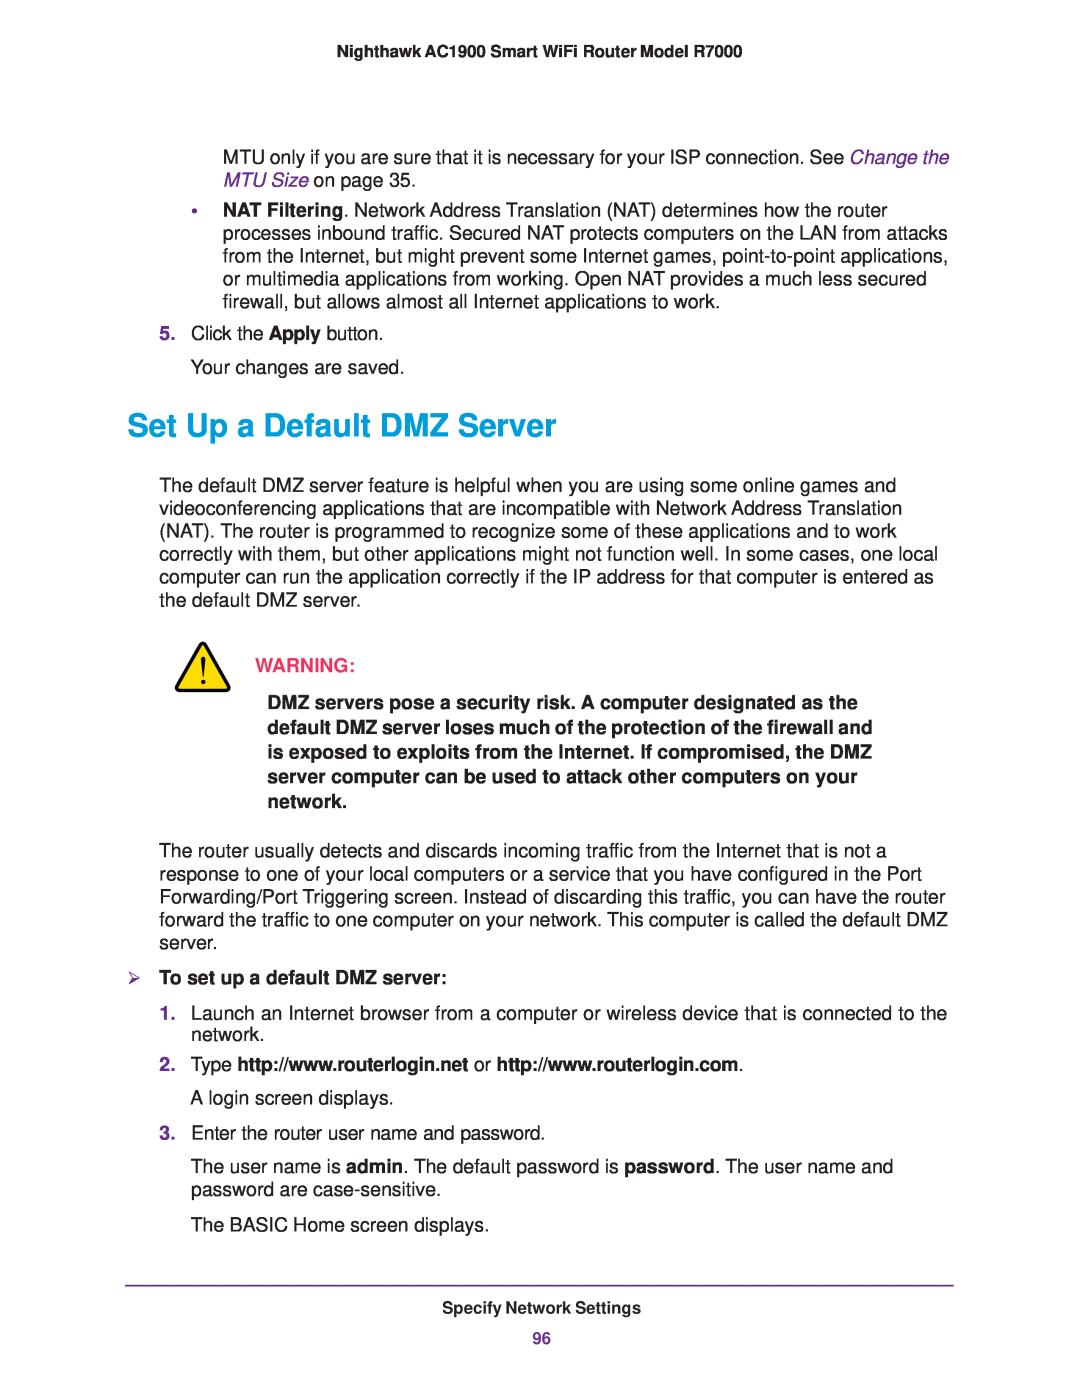 NETGEAR R7000 user manual Set Up a Default DMZ Server,  To set up a default DMZ server 